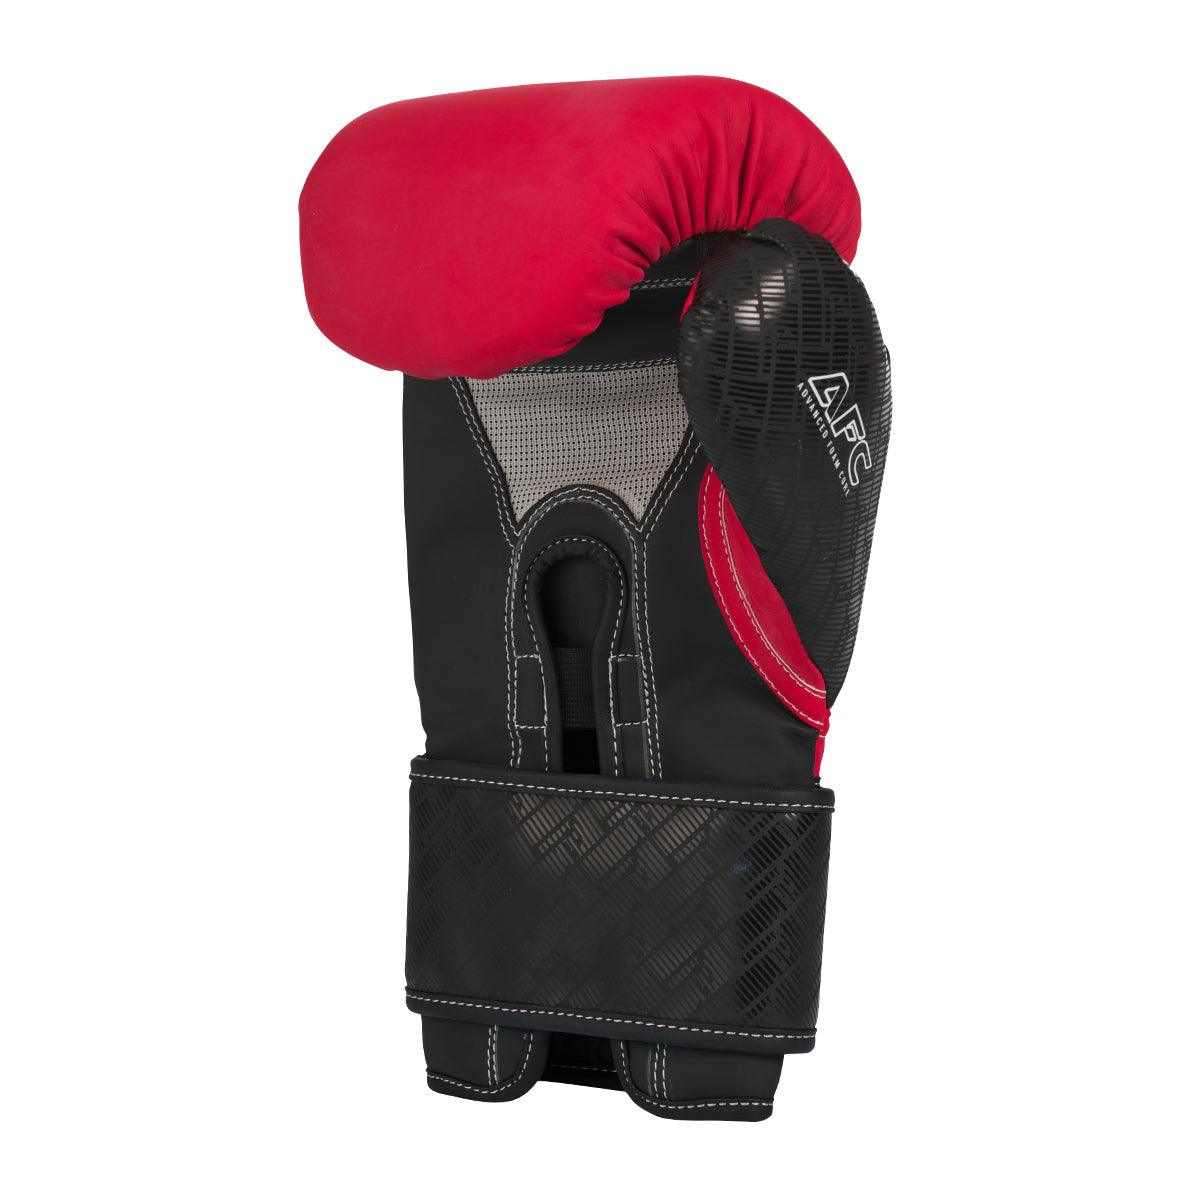 Brave Boxing Gloves - Red / Black - Violent Art Shop